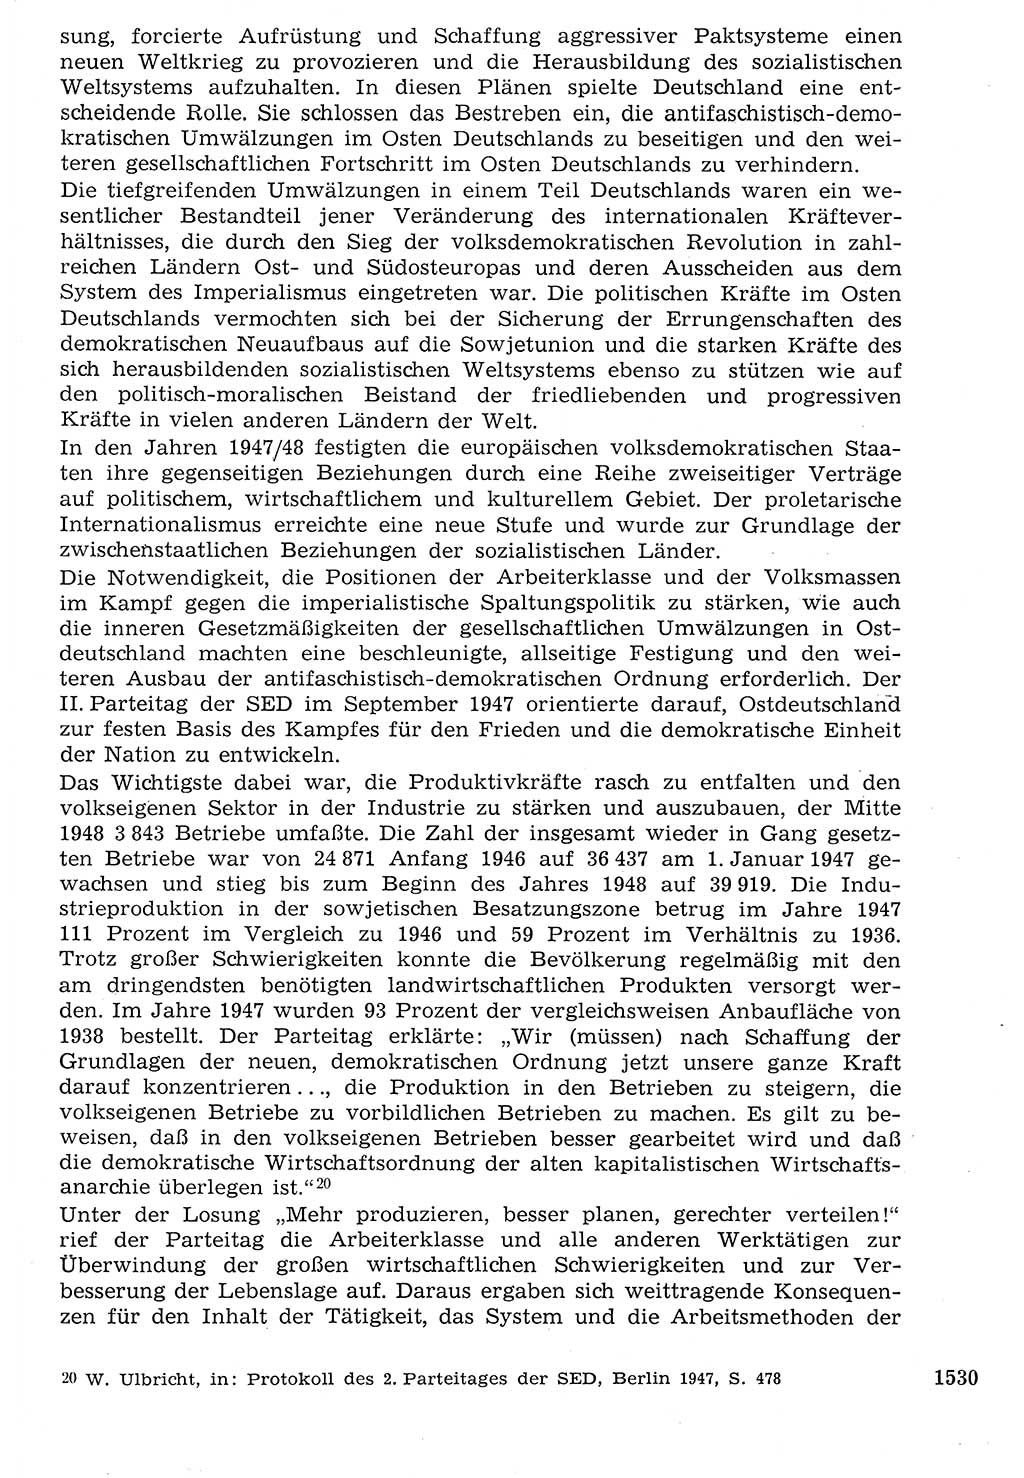 Staat und Recht (StuR), 17. Jahrgang [Deutsche Demokratische Republik (DDR)] 1968, Seite 1530 (StuR DDR 1968, S. 1530)